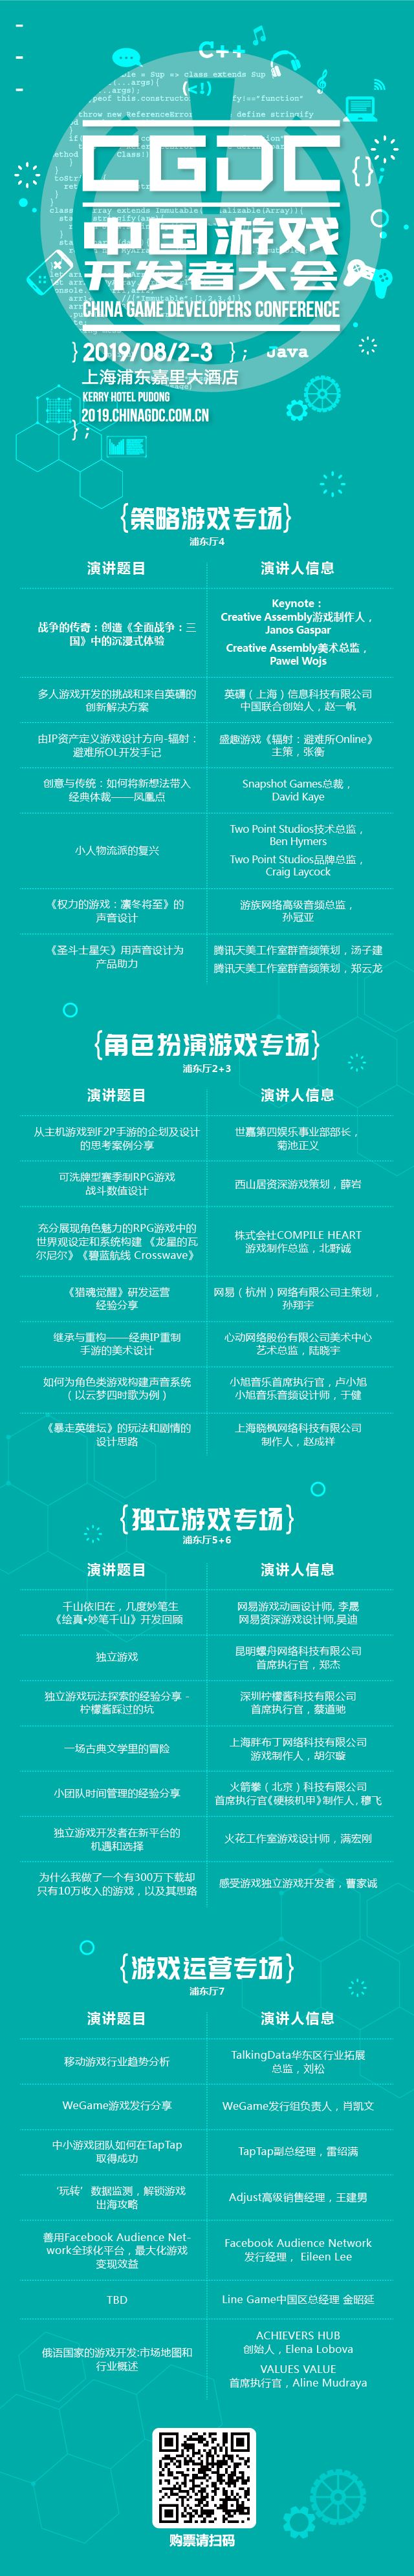 2019中国游戏开发者大会首日嘉宾预览!